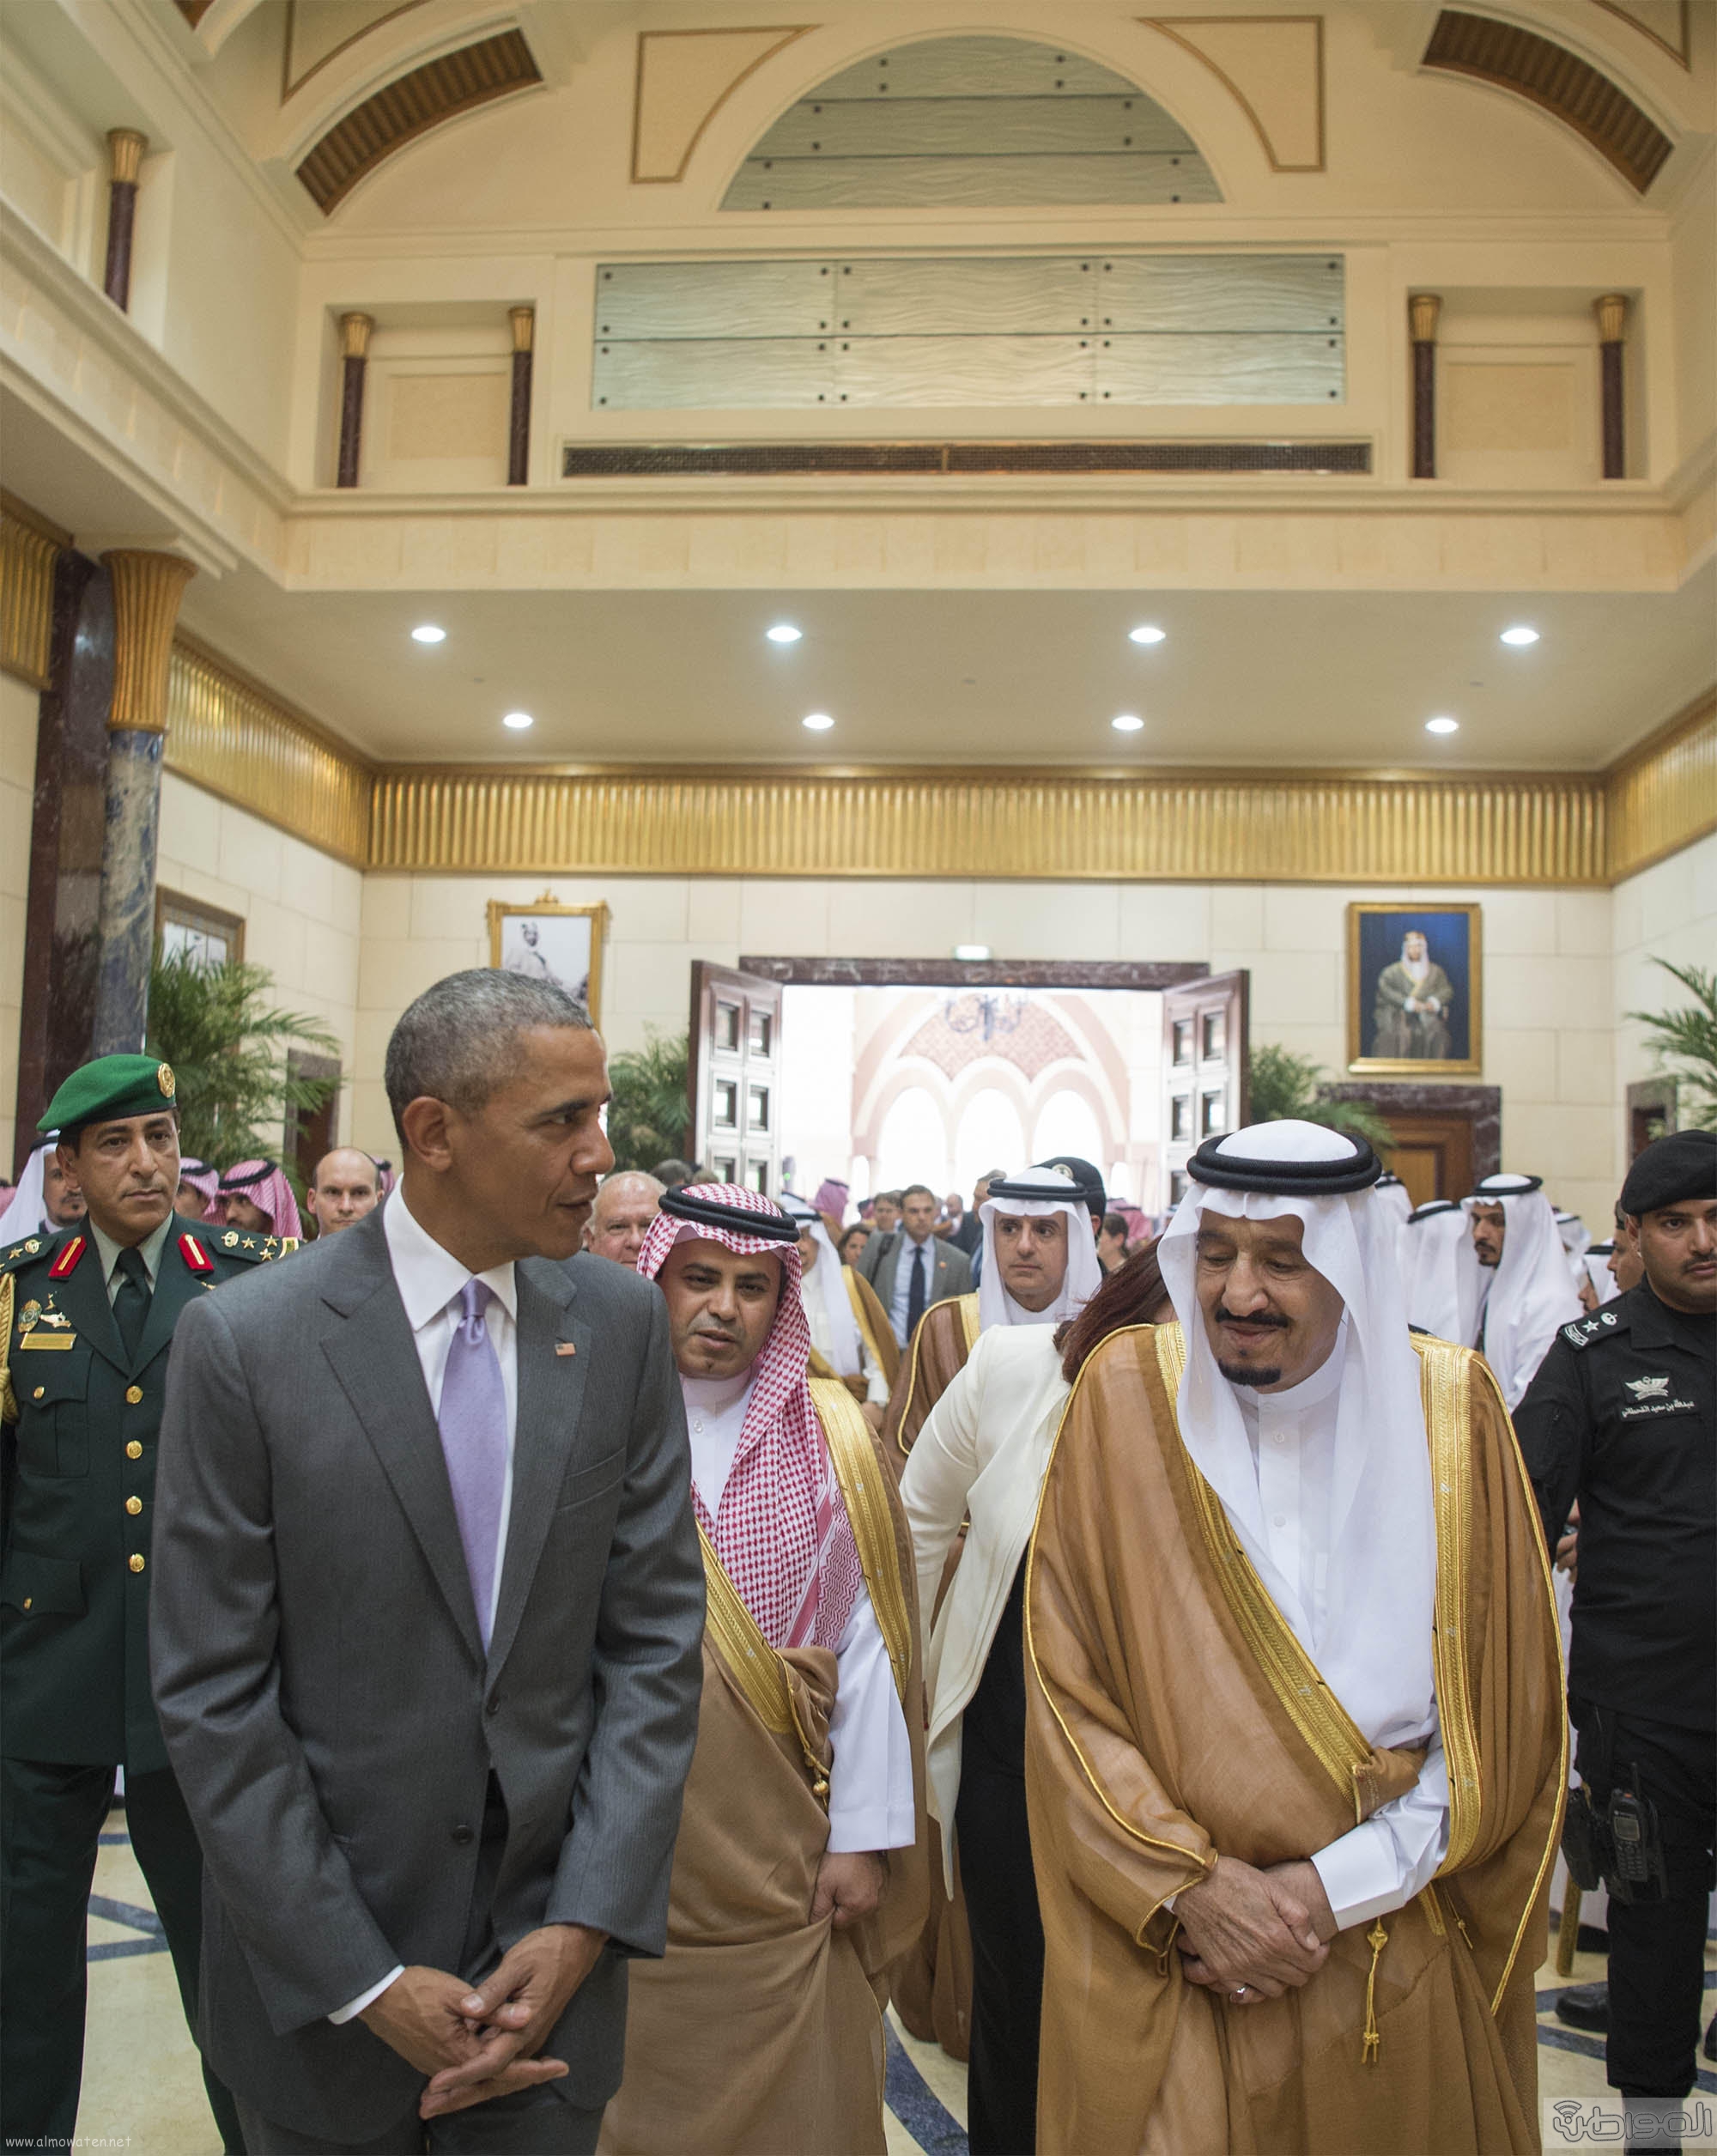 شاهد بالصور .. اسقبال الملك سلمان للرئيس الأمريكي